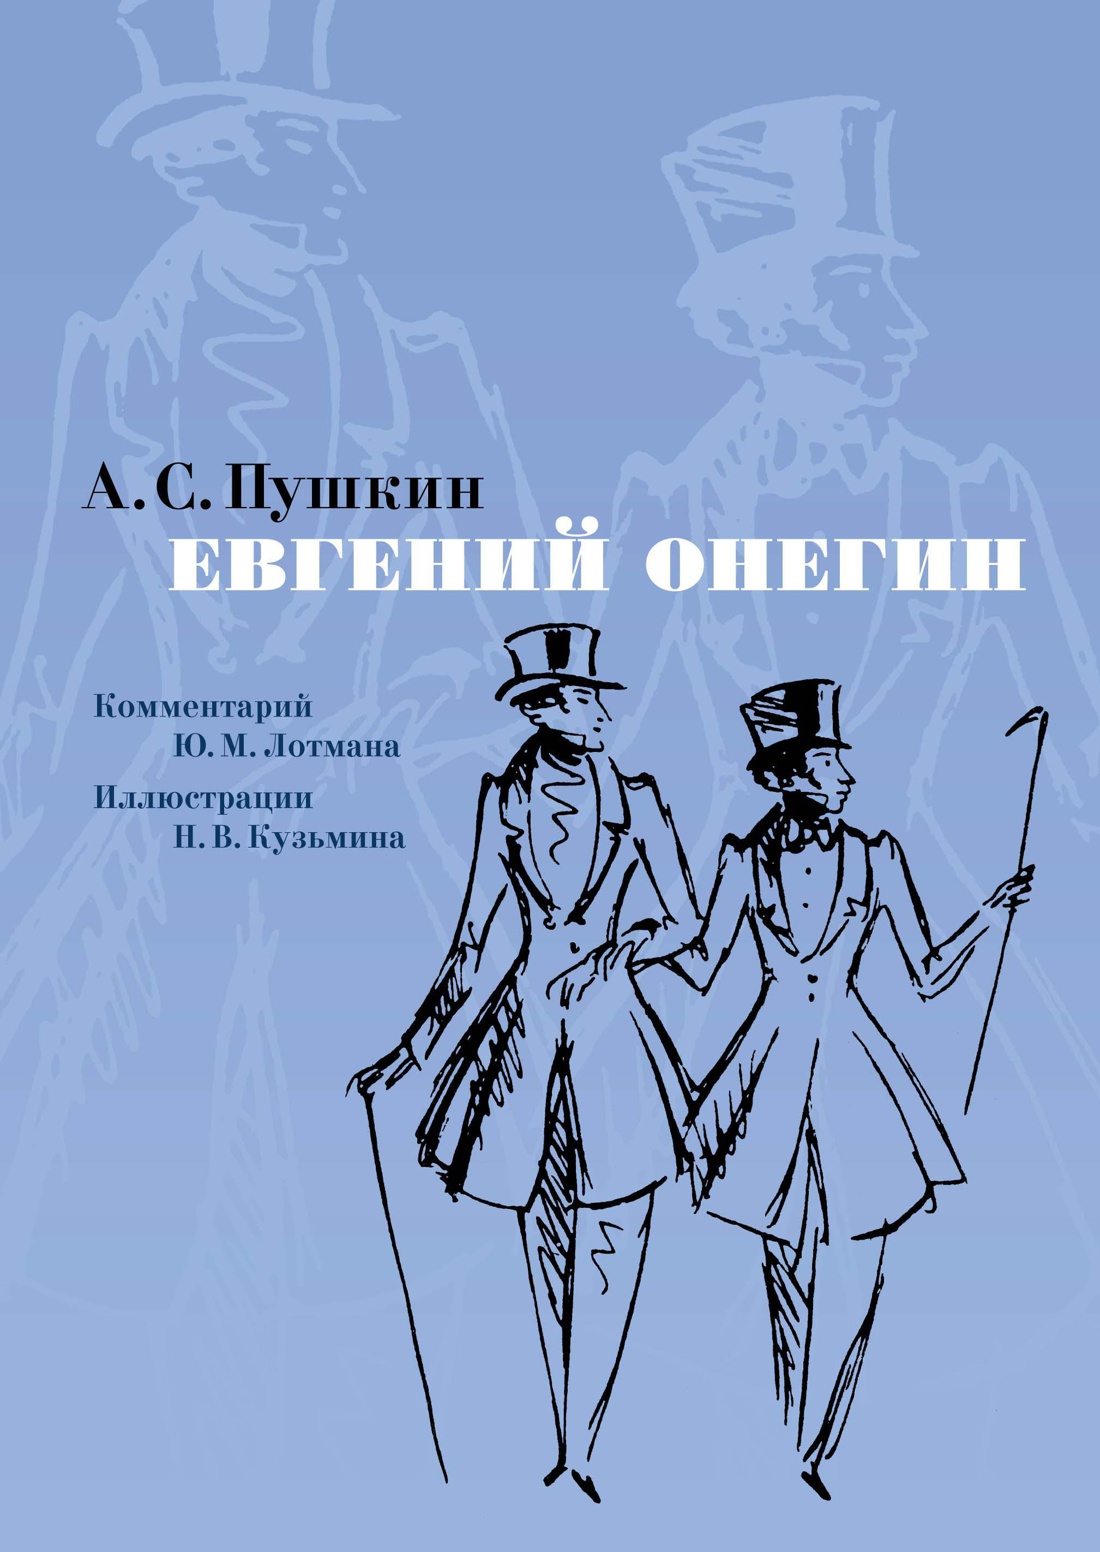 Образ автора в романе «Евгений Онегин» и его роль в повествовании